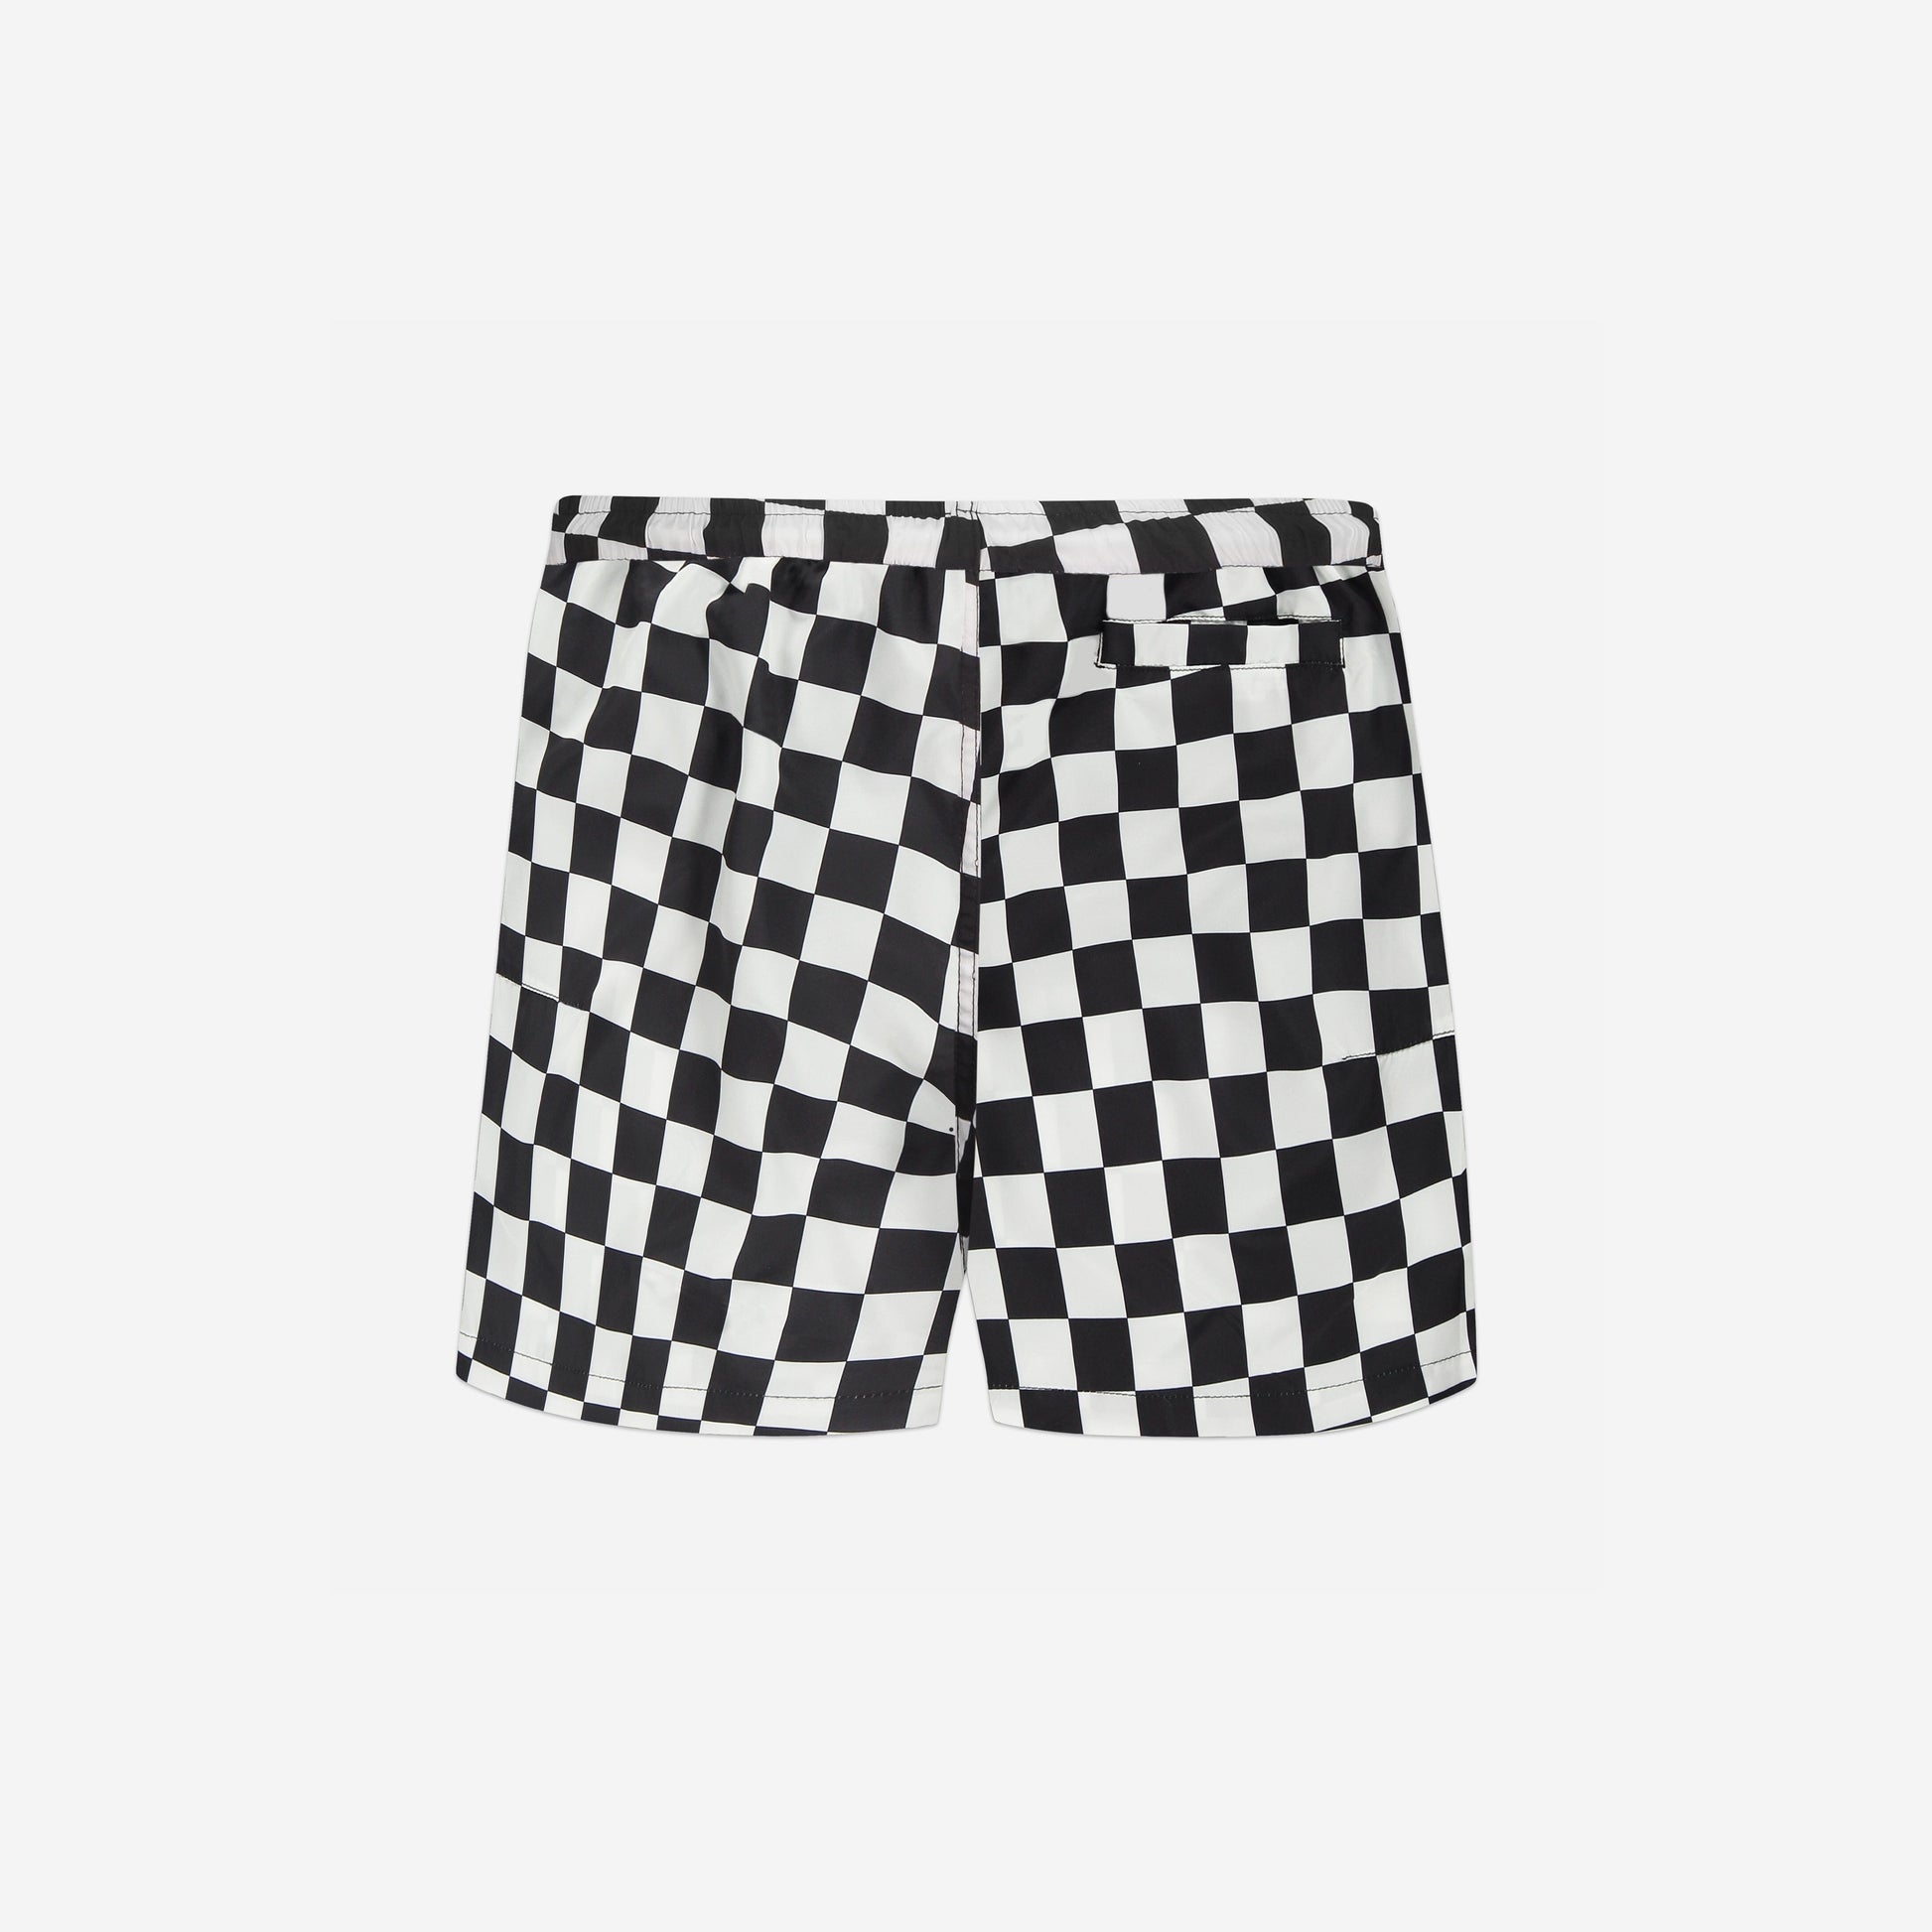 Essential Swim Shorts in Black/White Checkers